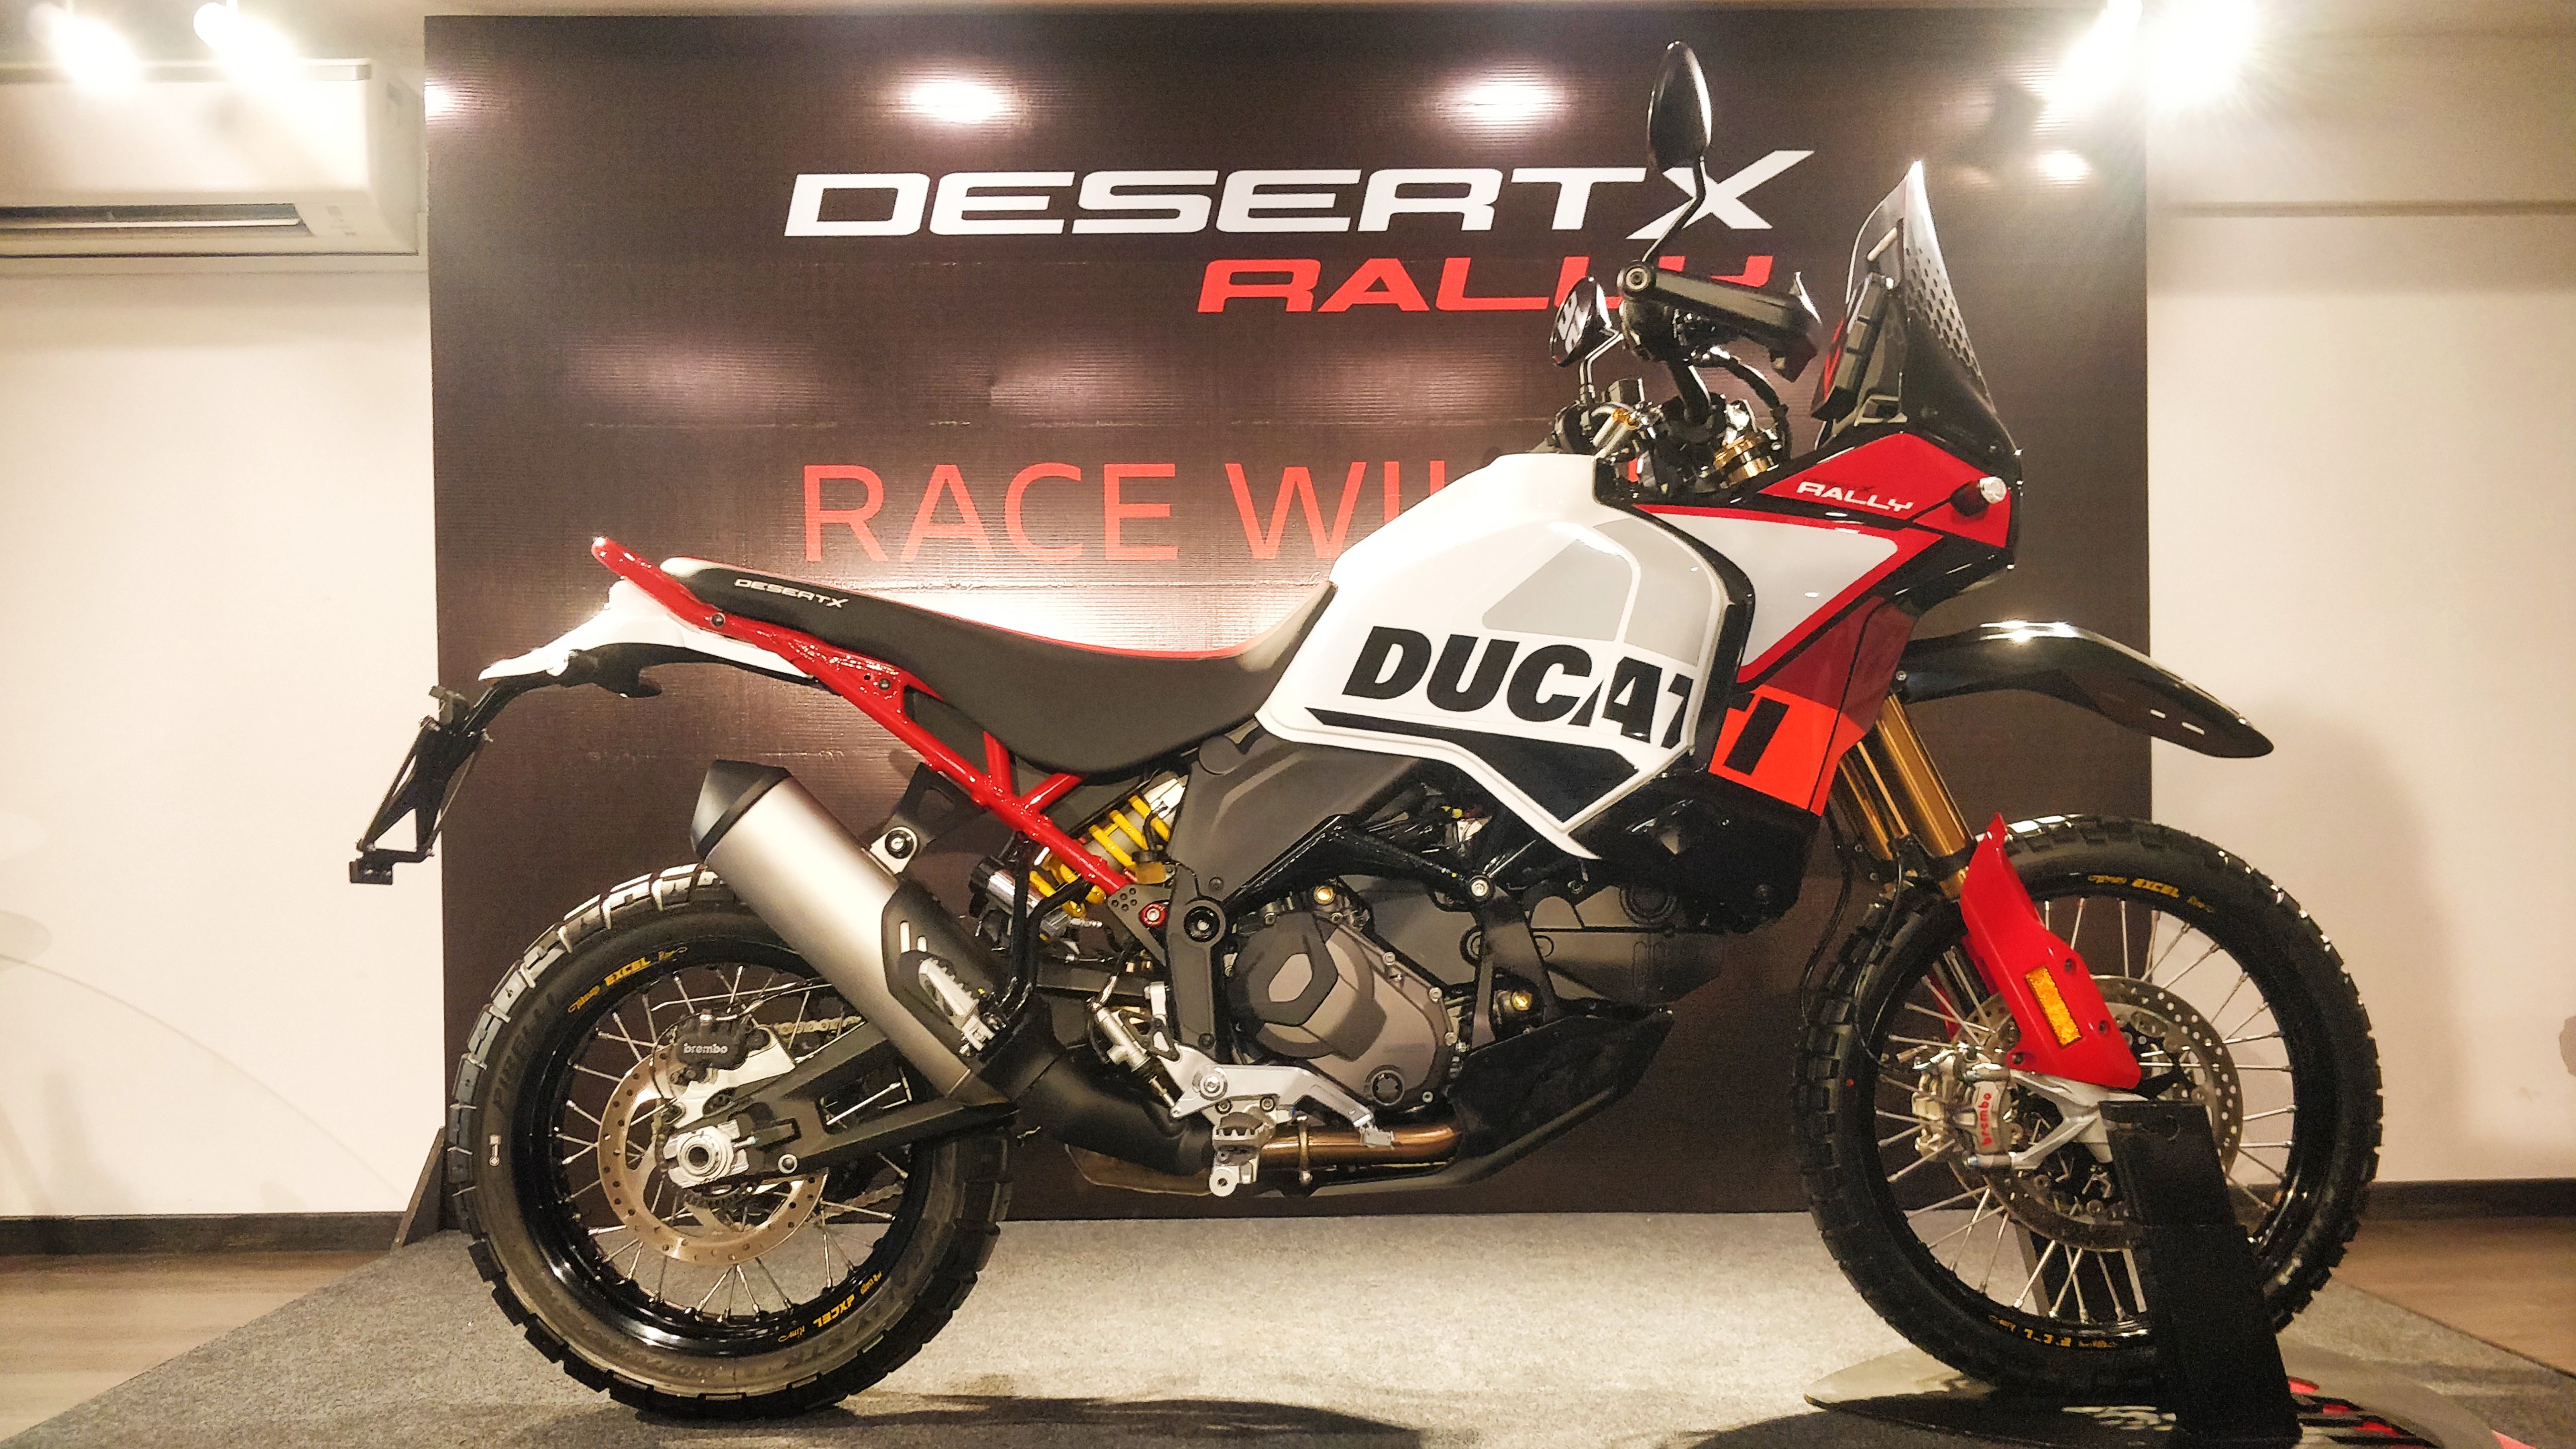 Ducati DesertX Rally Delivery